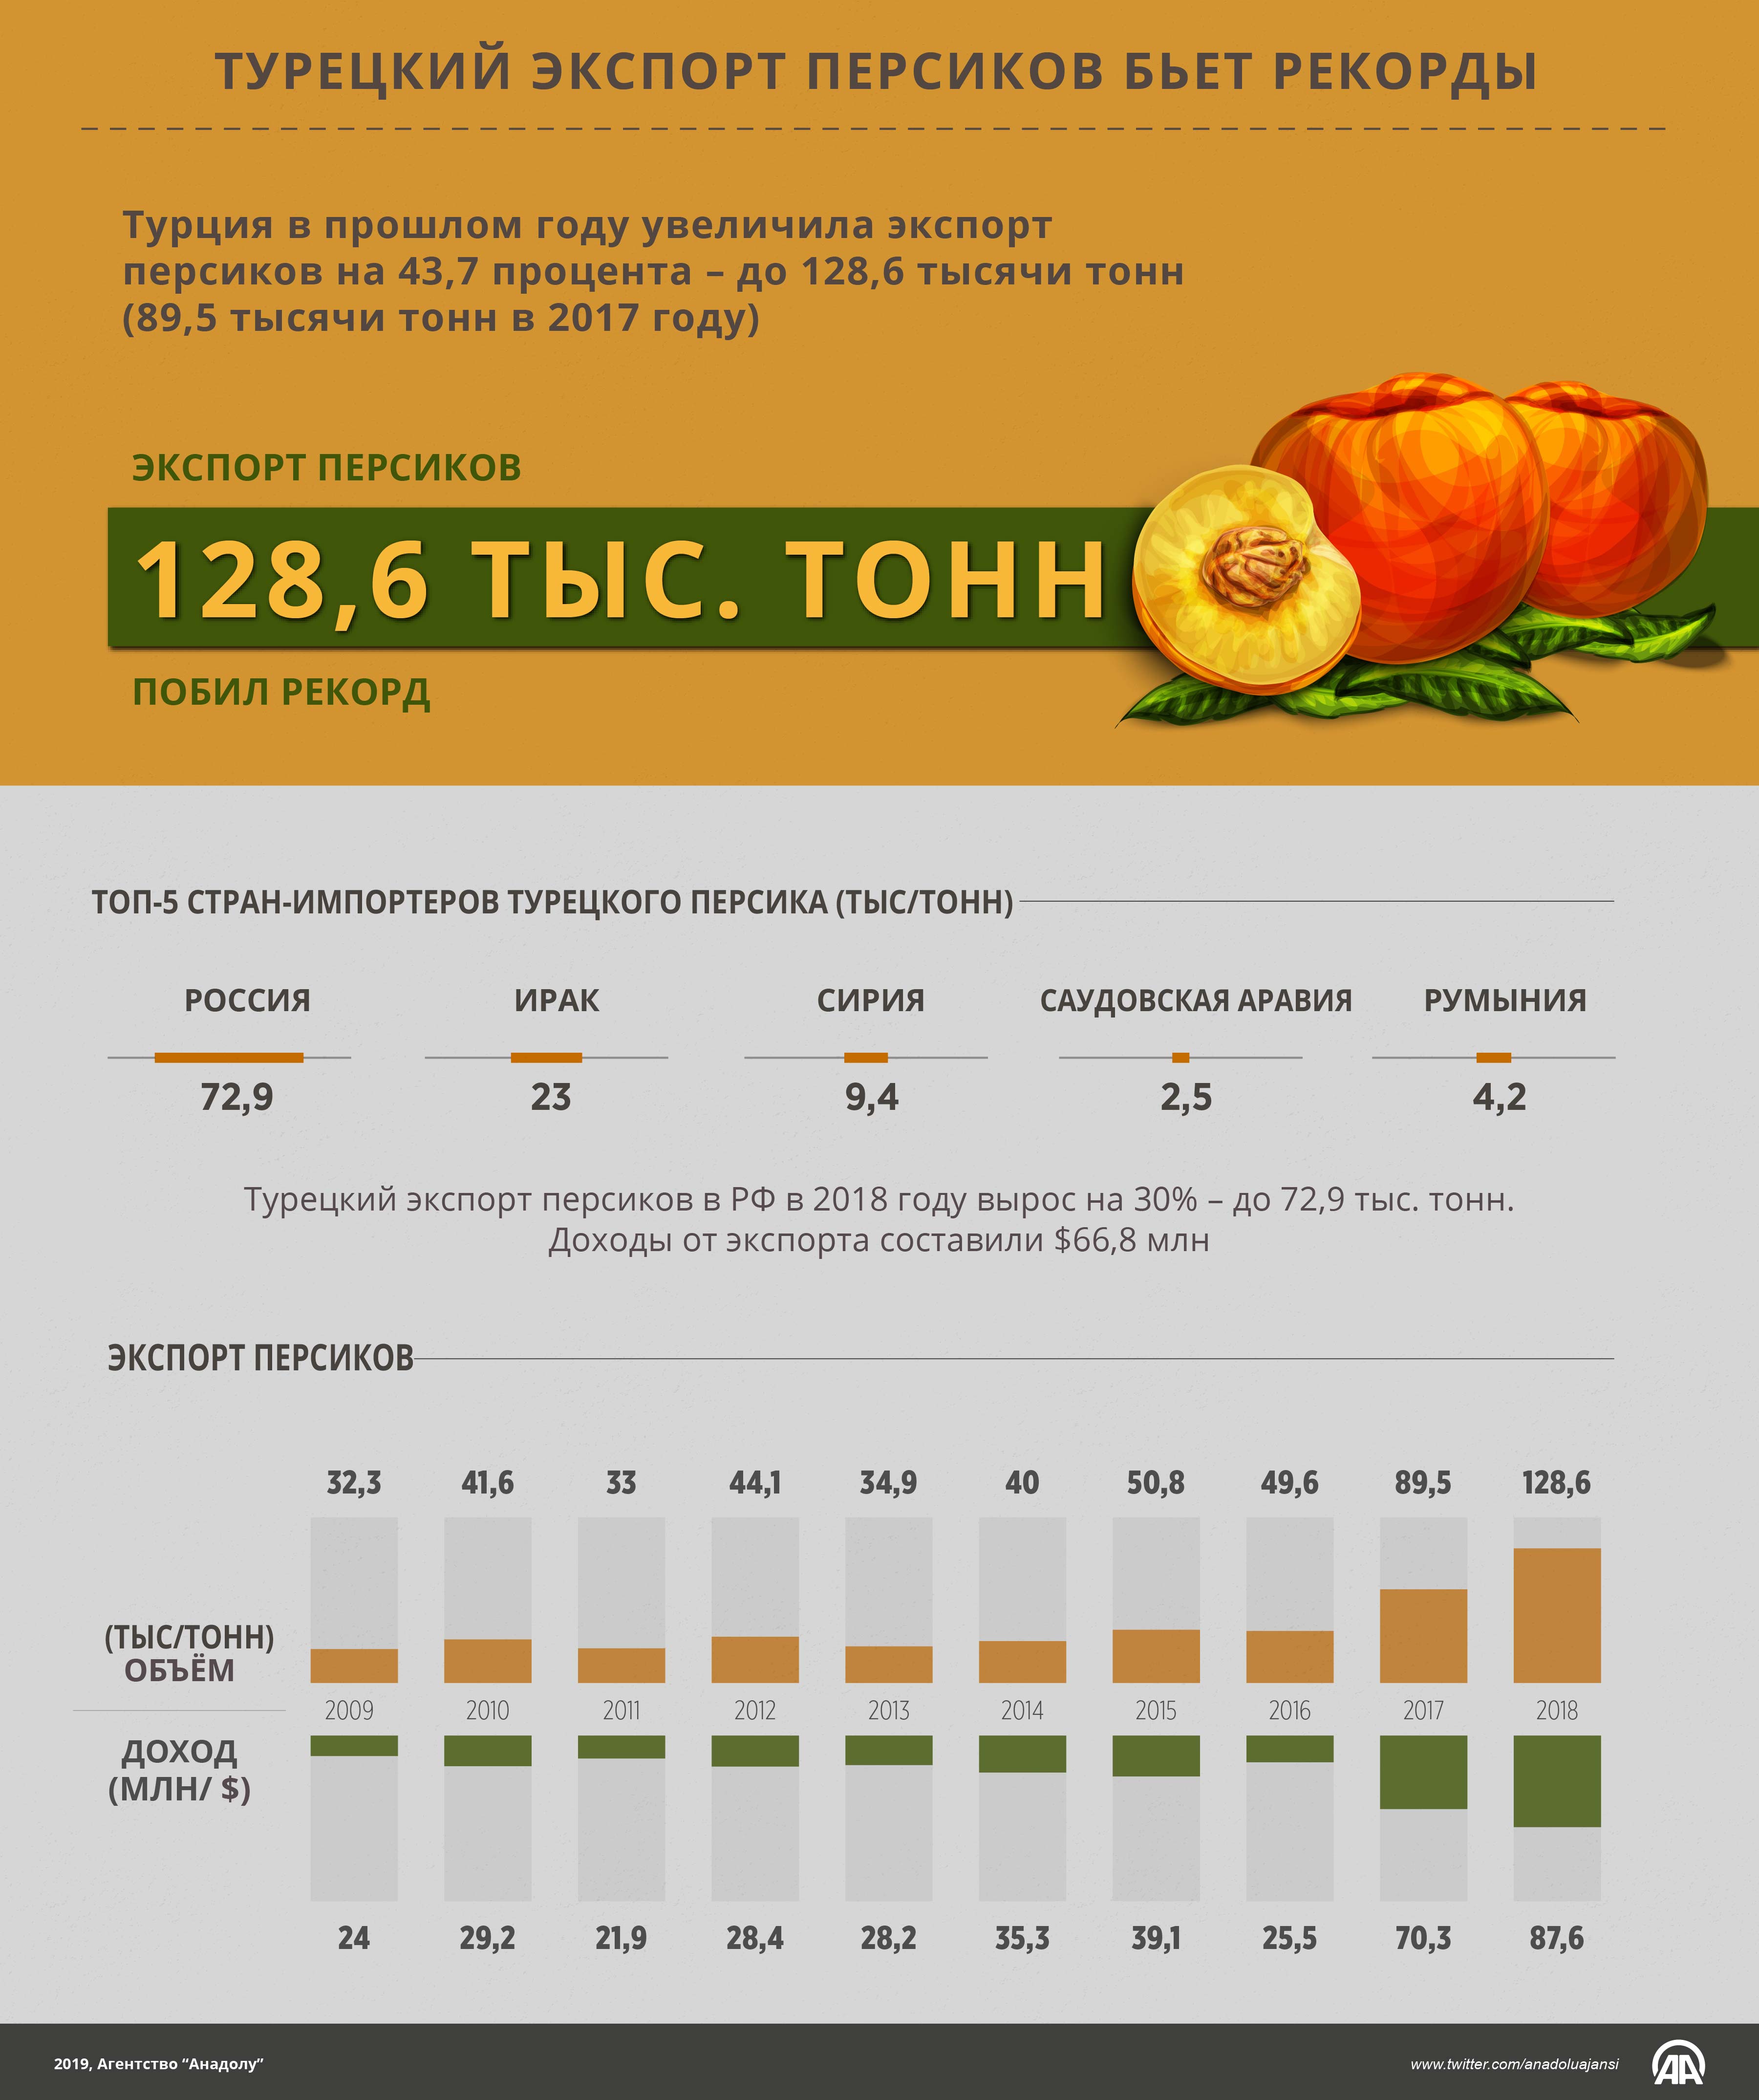 Турецкий экспорт персиков бьет рекорды